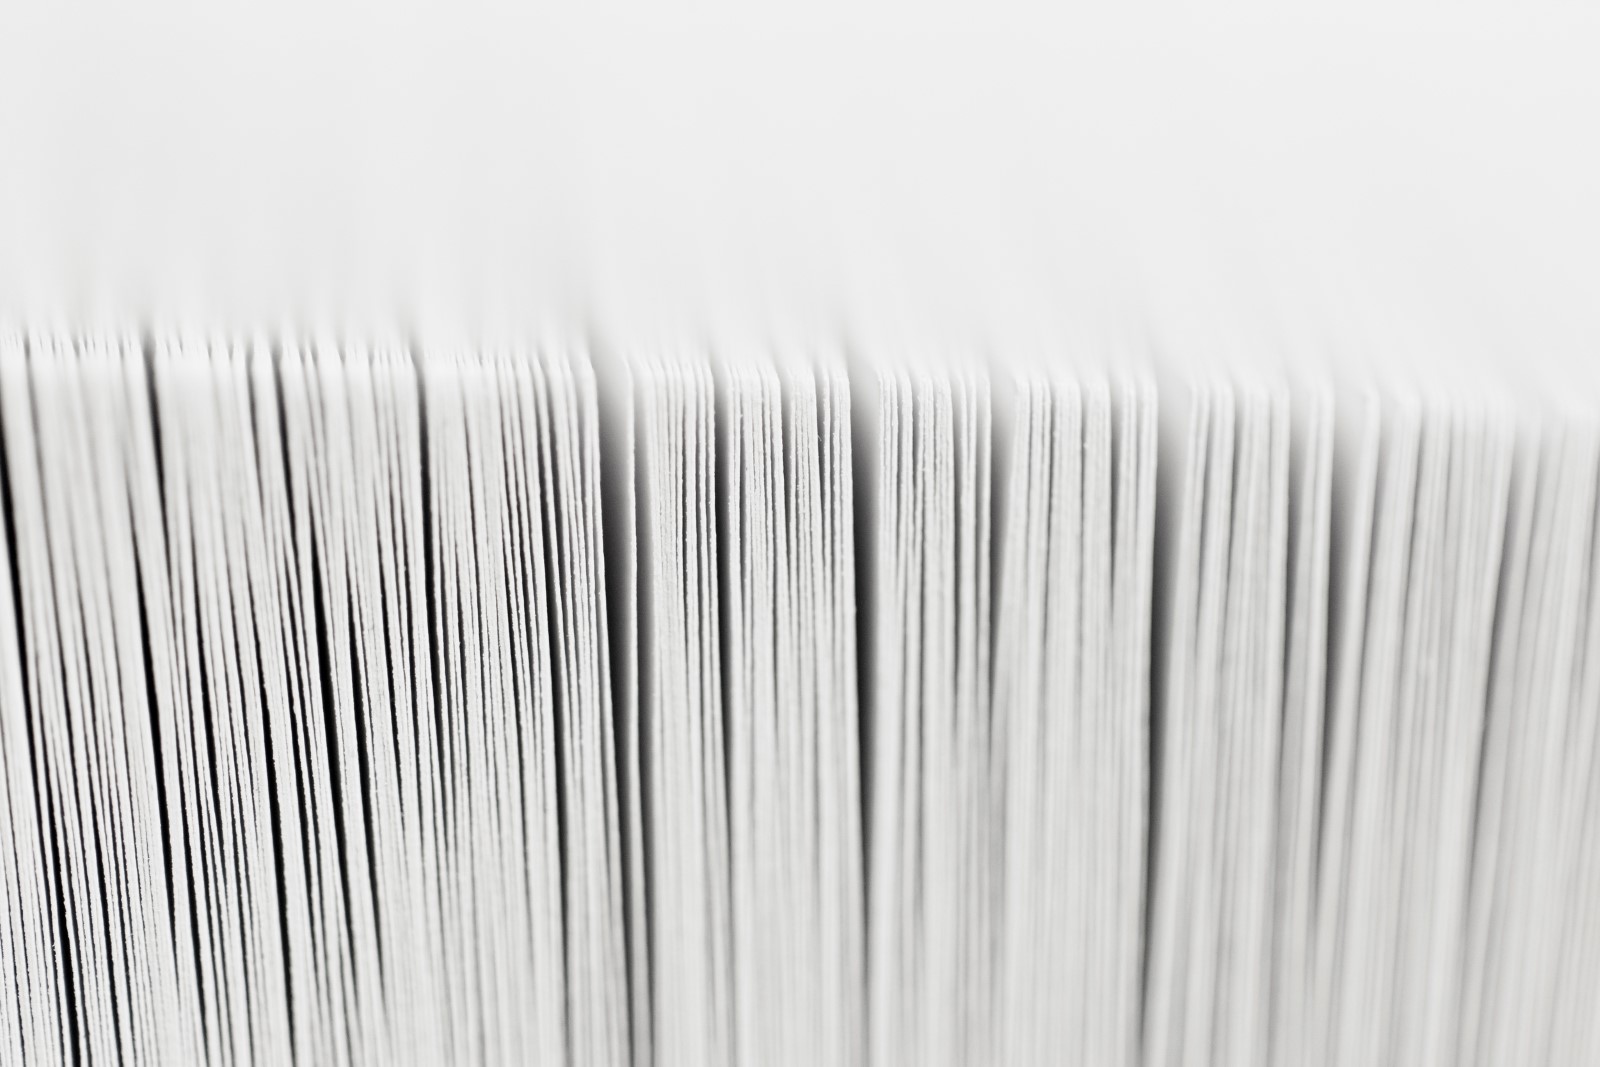 En pappersbunt fotoraferade stående från långsidan